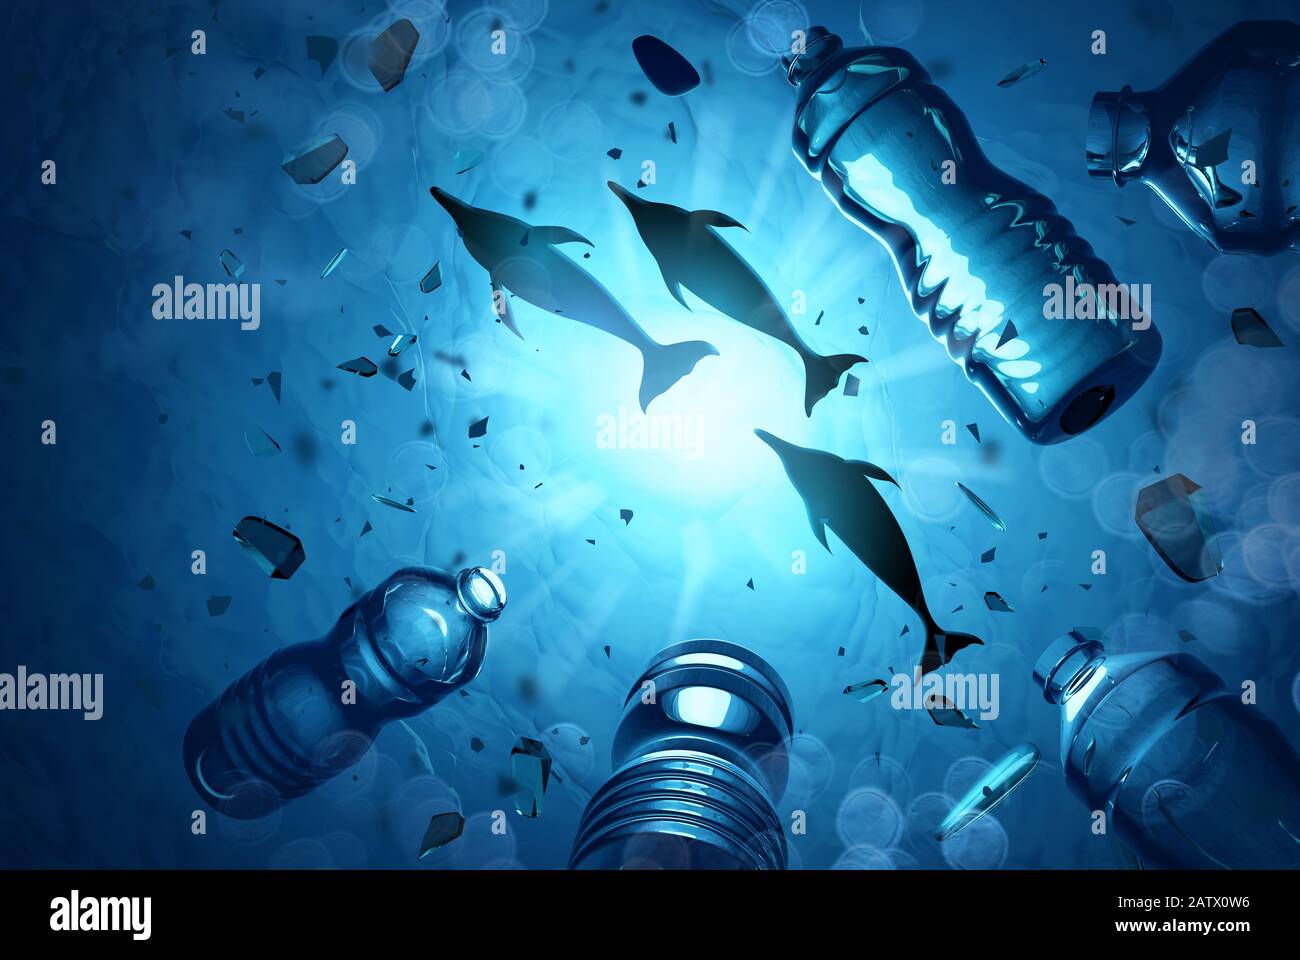 Dauphins nageant dans un océan rempli de microplastiques et de déchets plastiques. Concept de pollution de l'eau de mer. Illustration tridimensionnelle. Banque D'Images